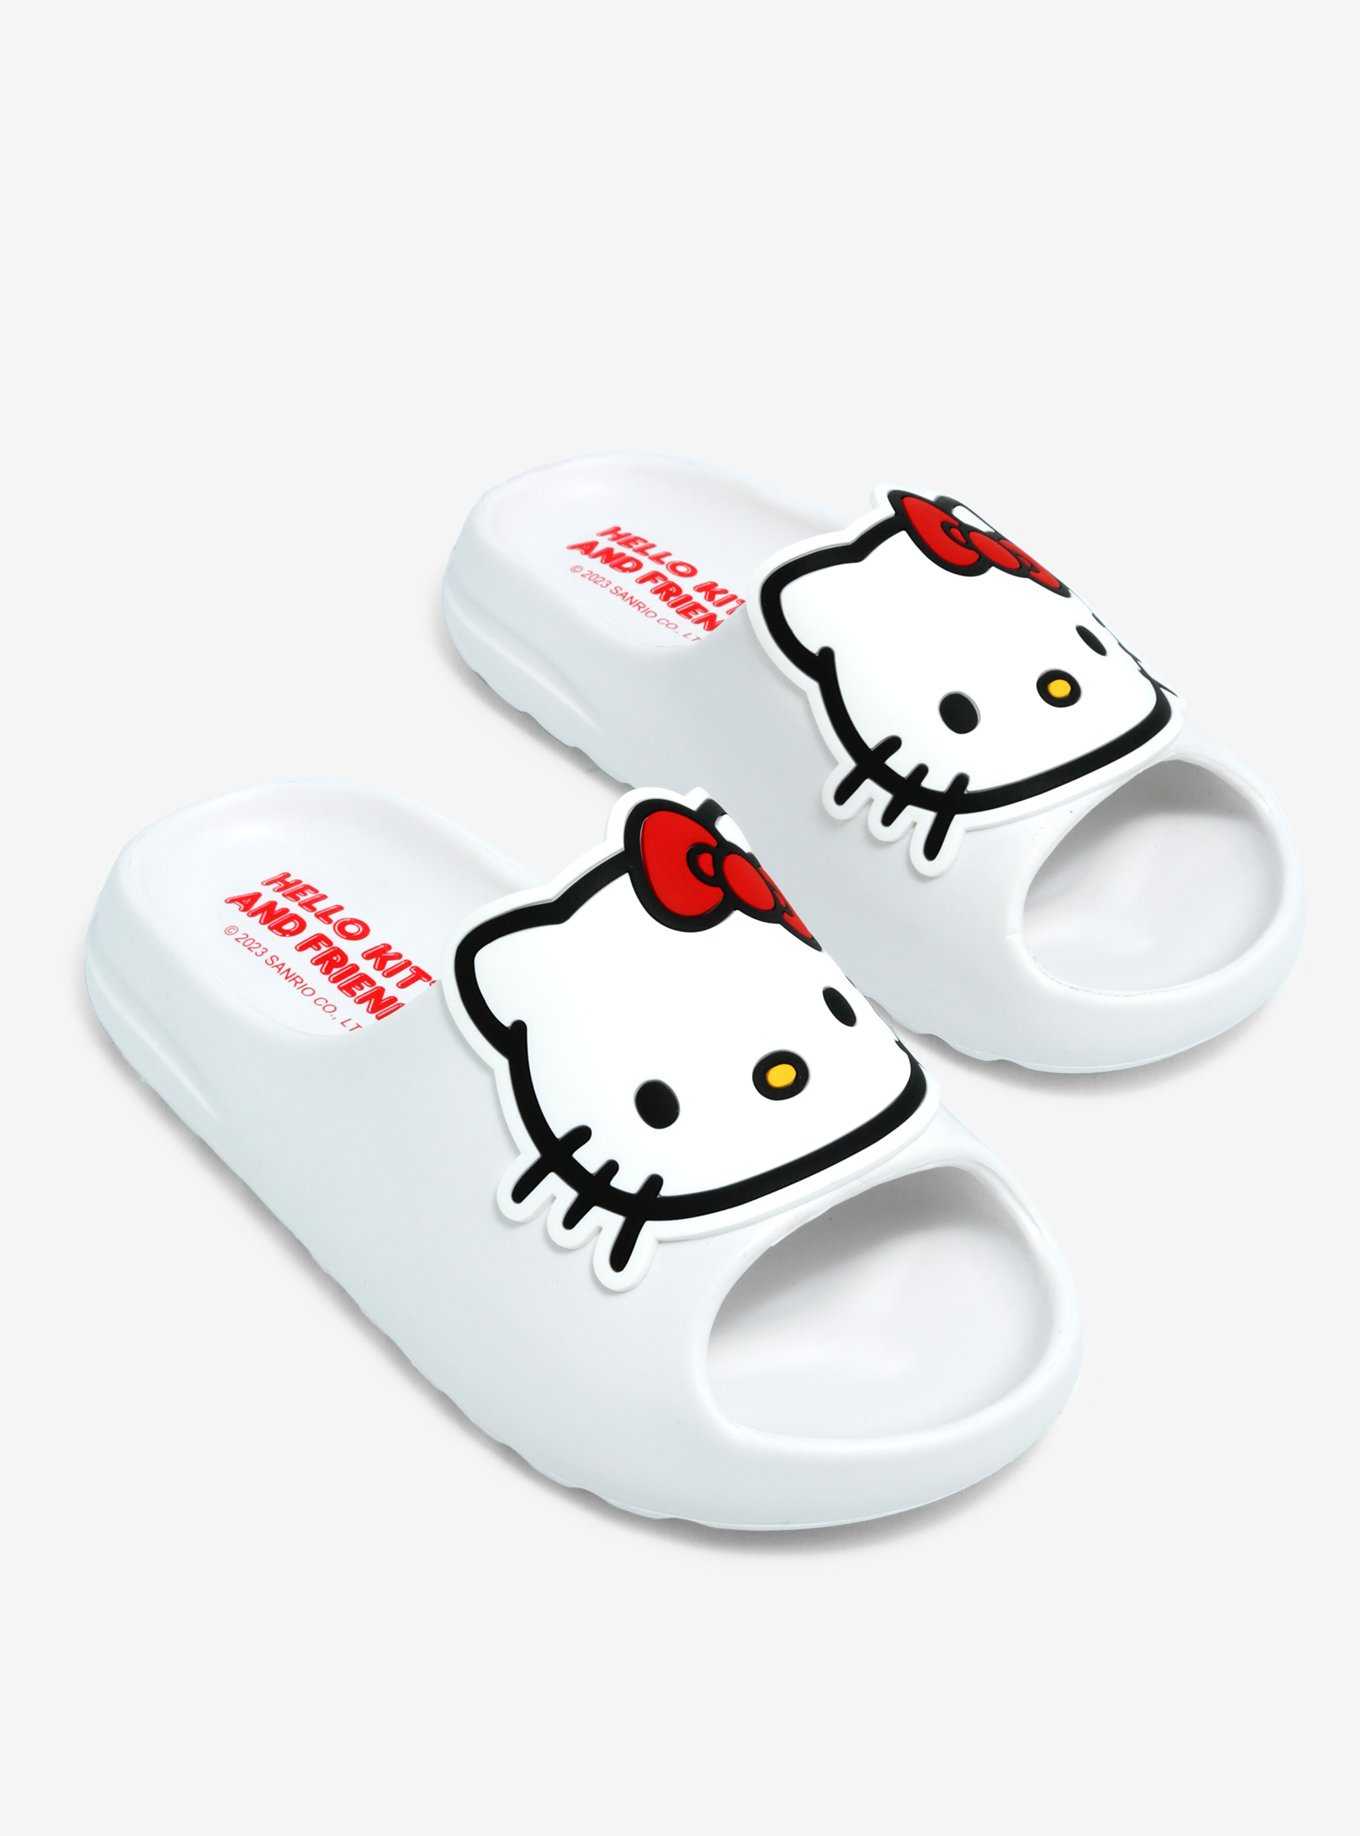 Hello Kitty White Slides, , hi-res